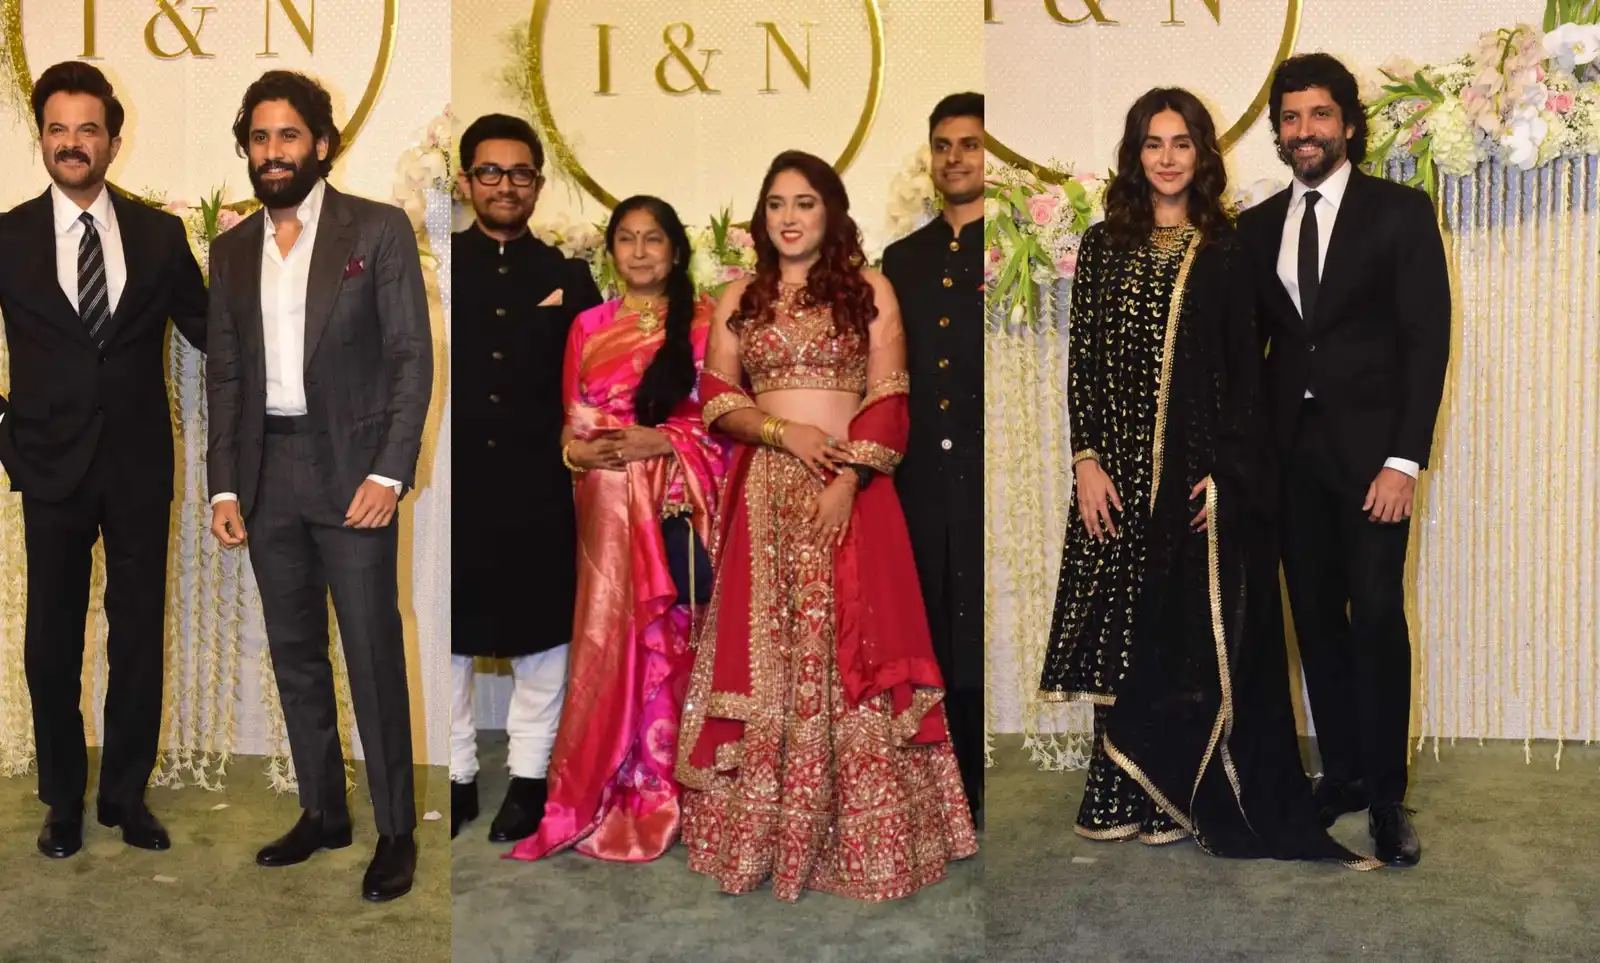 Ira-Nupur Wedding Reception: आमिर खान की बेटी के रिसेप्शन में लगा सितारों ला जमावड़ा, अनिल कपूर, जूही चावला, फरहान अख्तर समेत पहुंचे ये सितारे